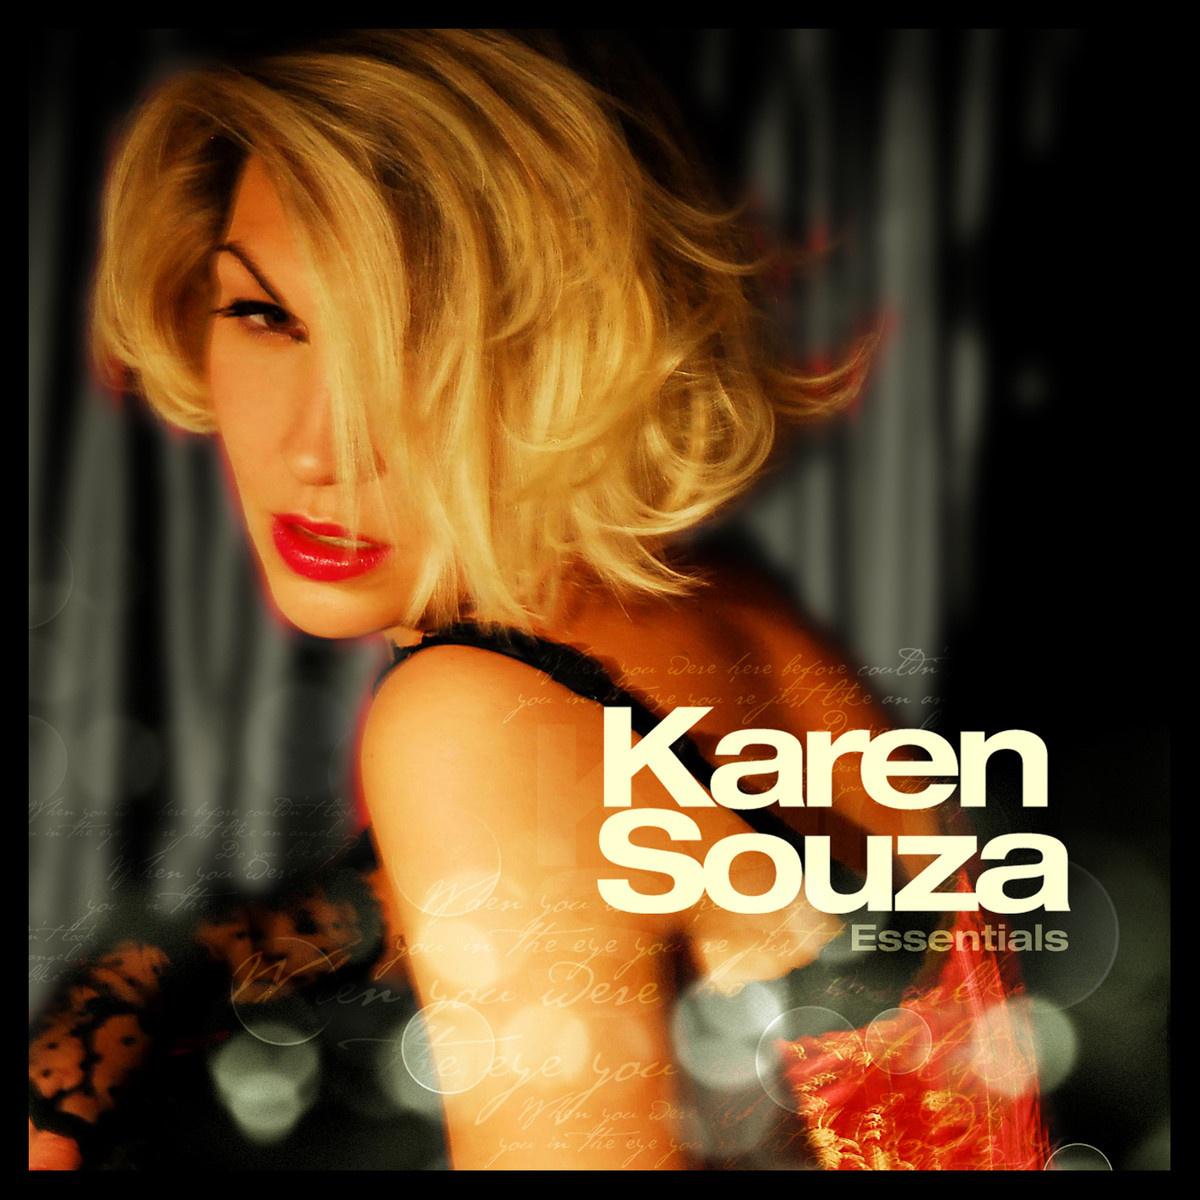 Karen Souza - Personal Jesus